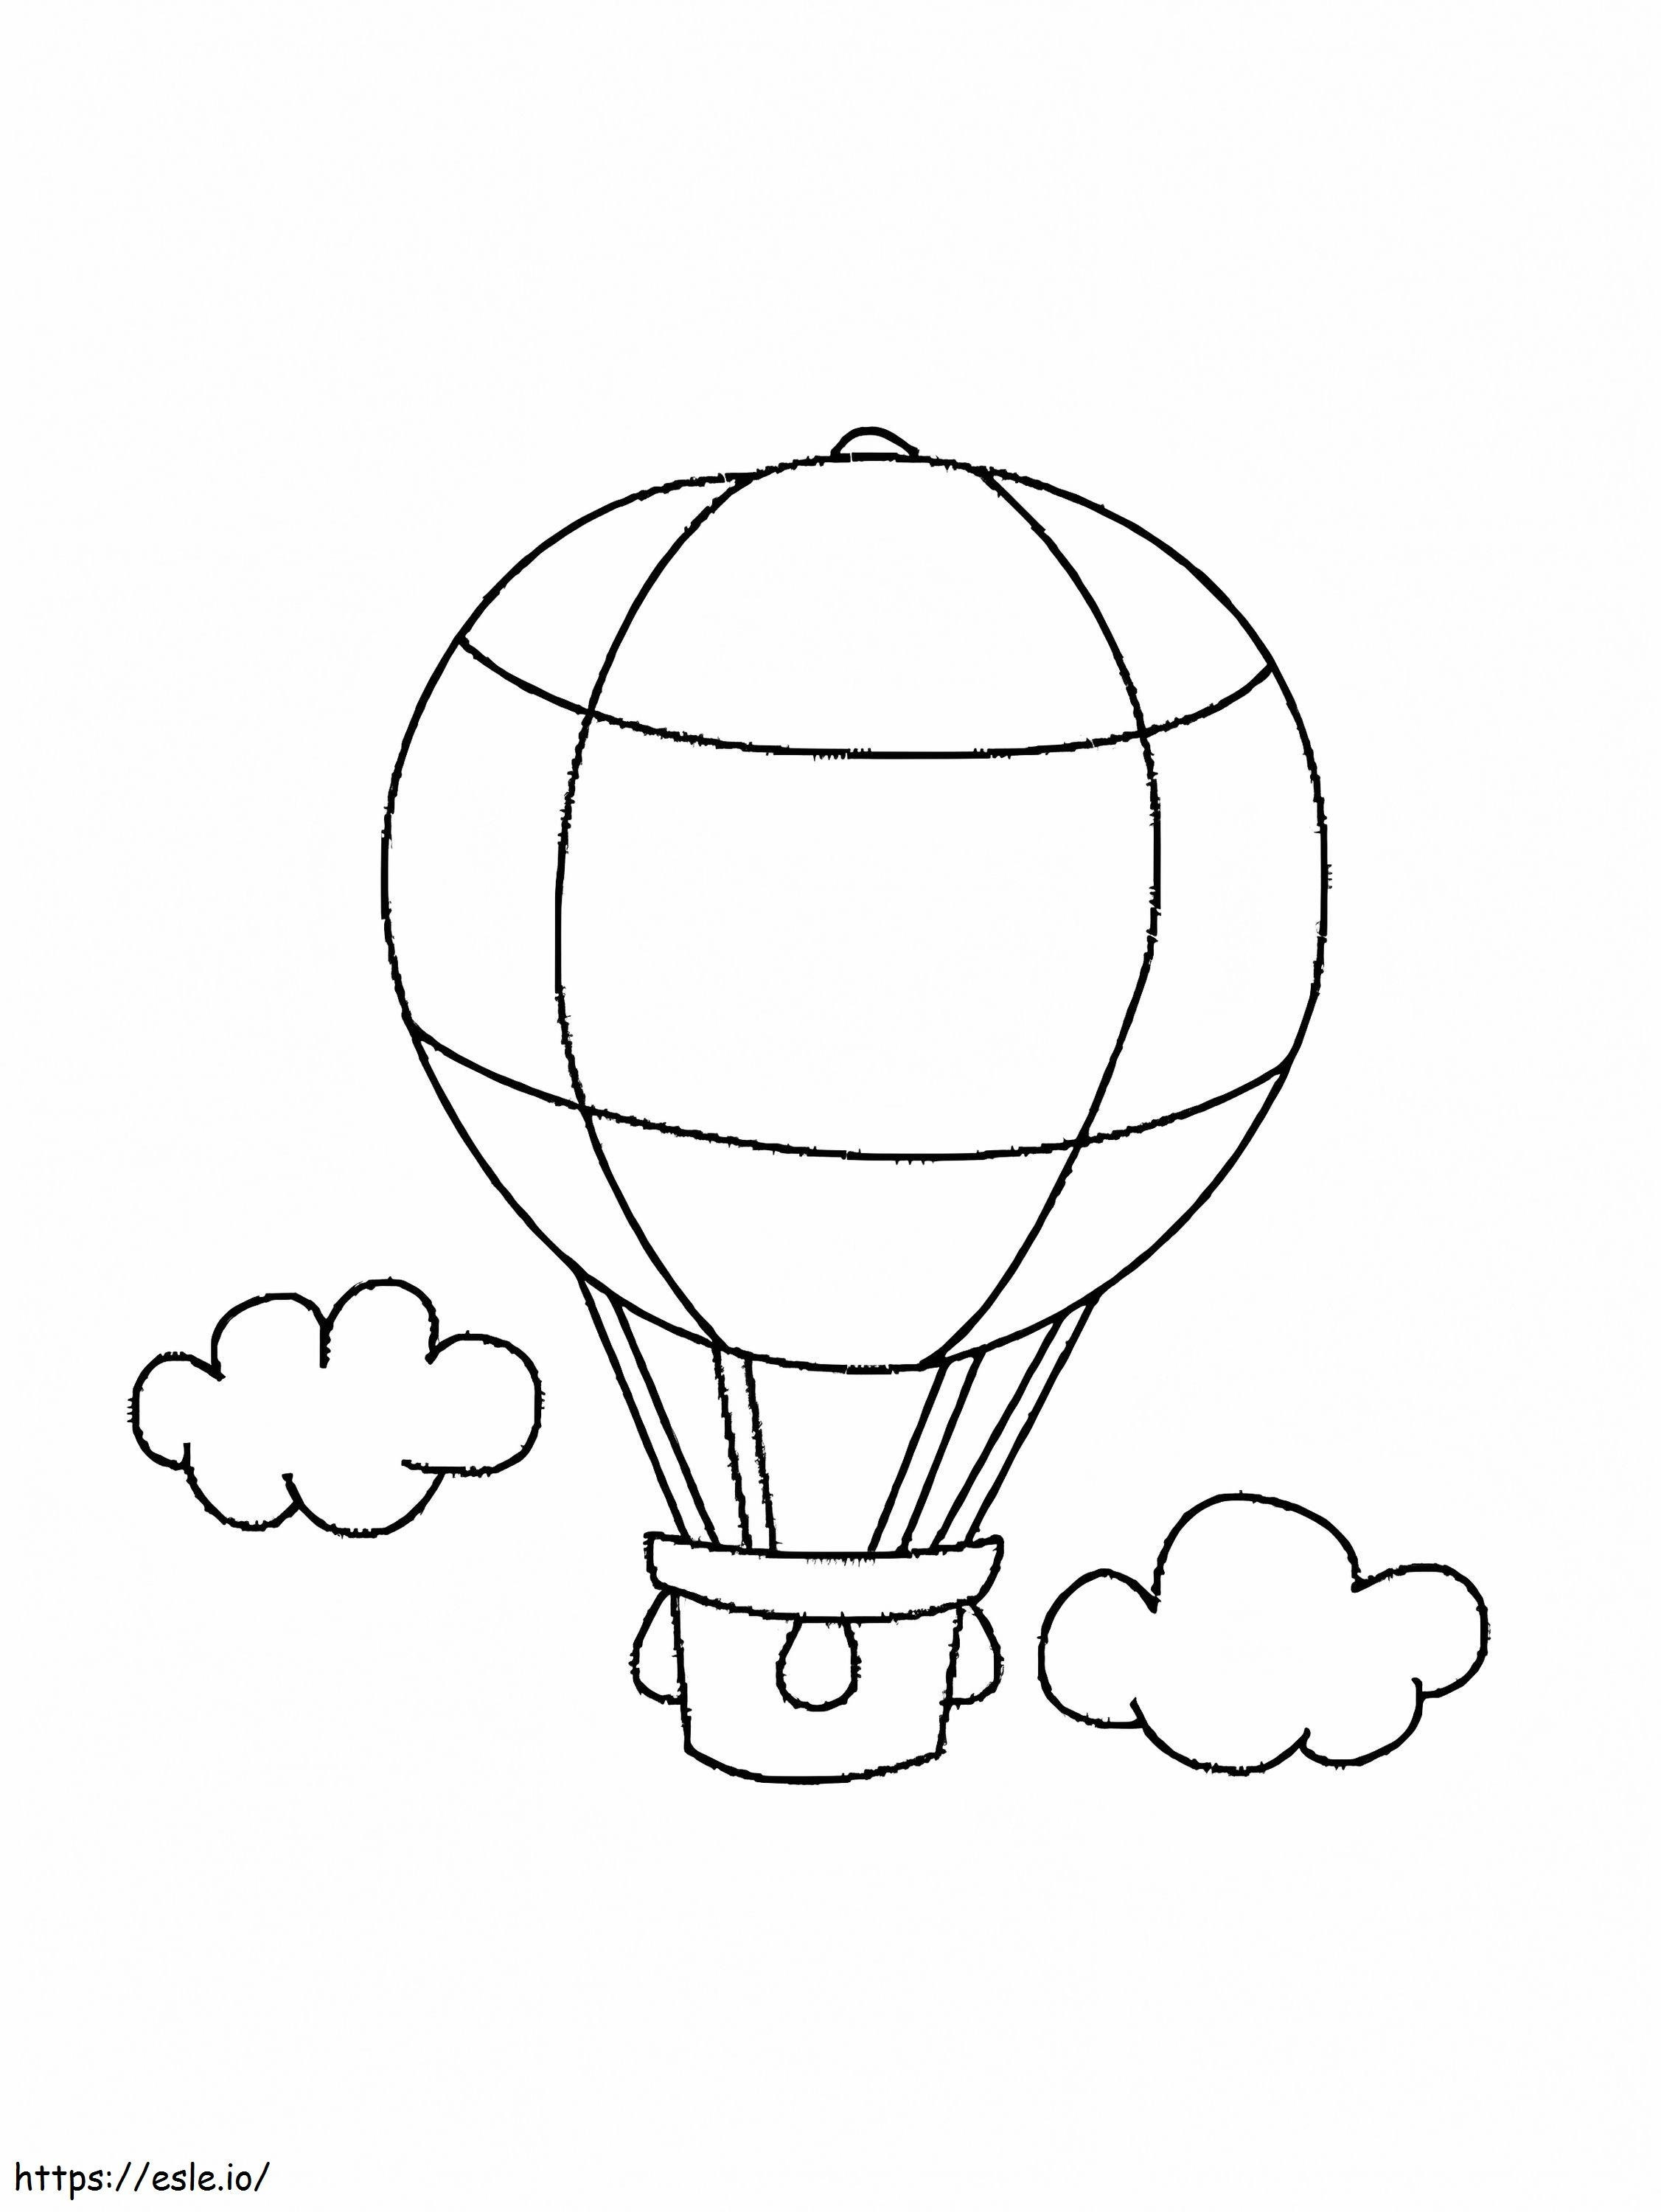 Balon Na Ogrzane Powietrze I Chmura kolorowanka